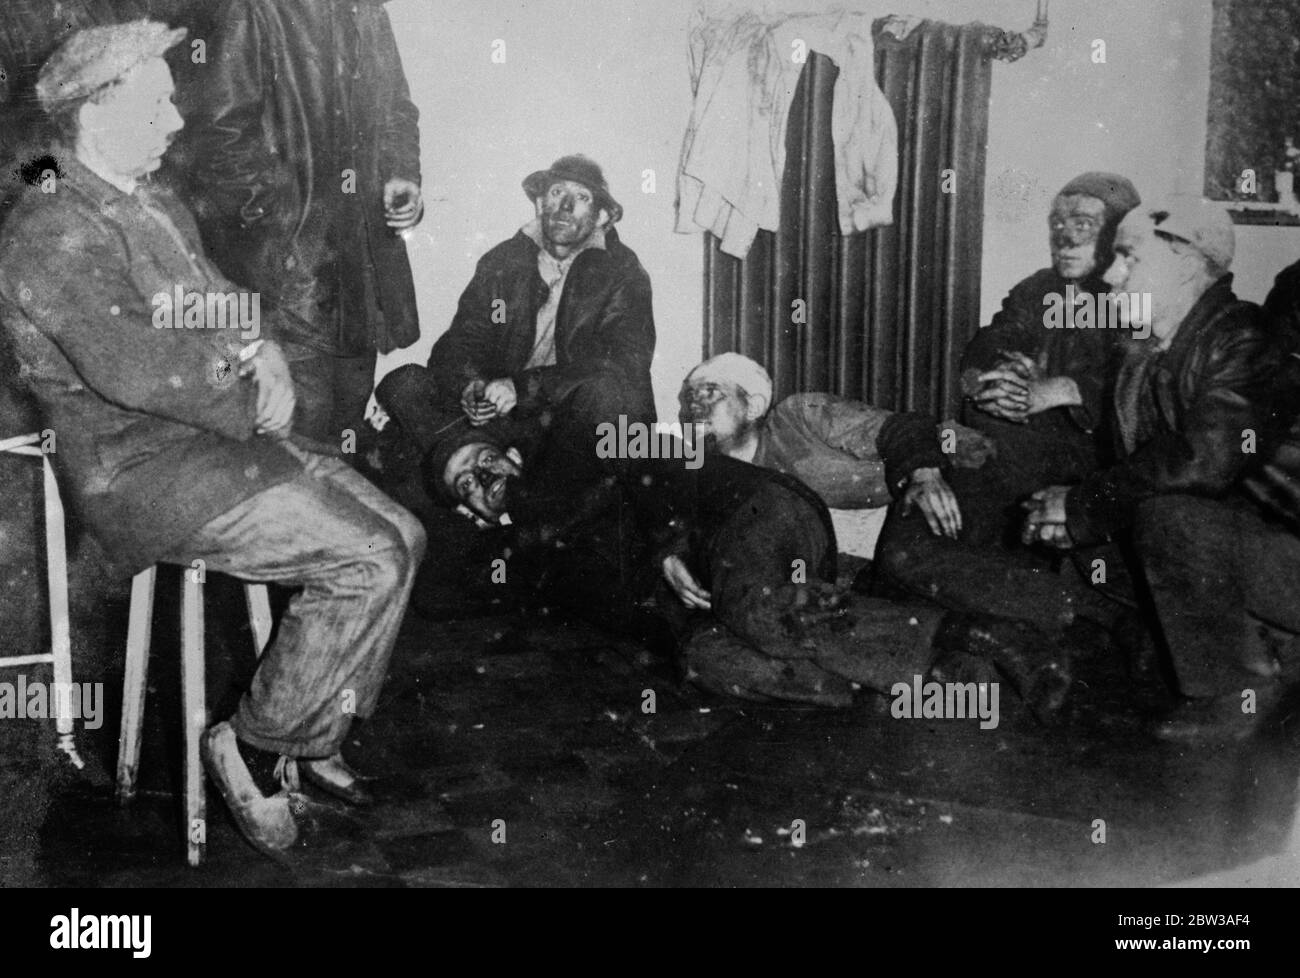 43 in belgischen Minen Katastrophe zu sterben. Dreiundvierzig Männer entrohten, als eine katastrophale Explosion in einer Kohlemine in der Nähe von Paturages, Belgien, auftrat. Die Explosion ereignete sich in einer Galerie 2 , 700 Meter unter der Erde . Nach dem Unfall wurde die Mine versiegelt. Foto zeigt Überlebende nach der Katastrophe. 17 Mai 1934 . Stockfoto